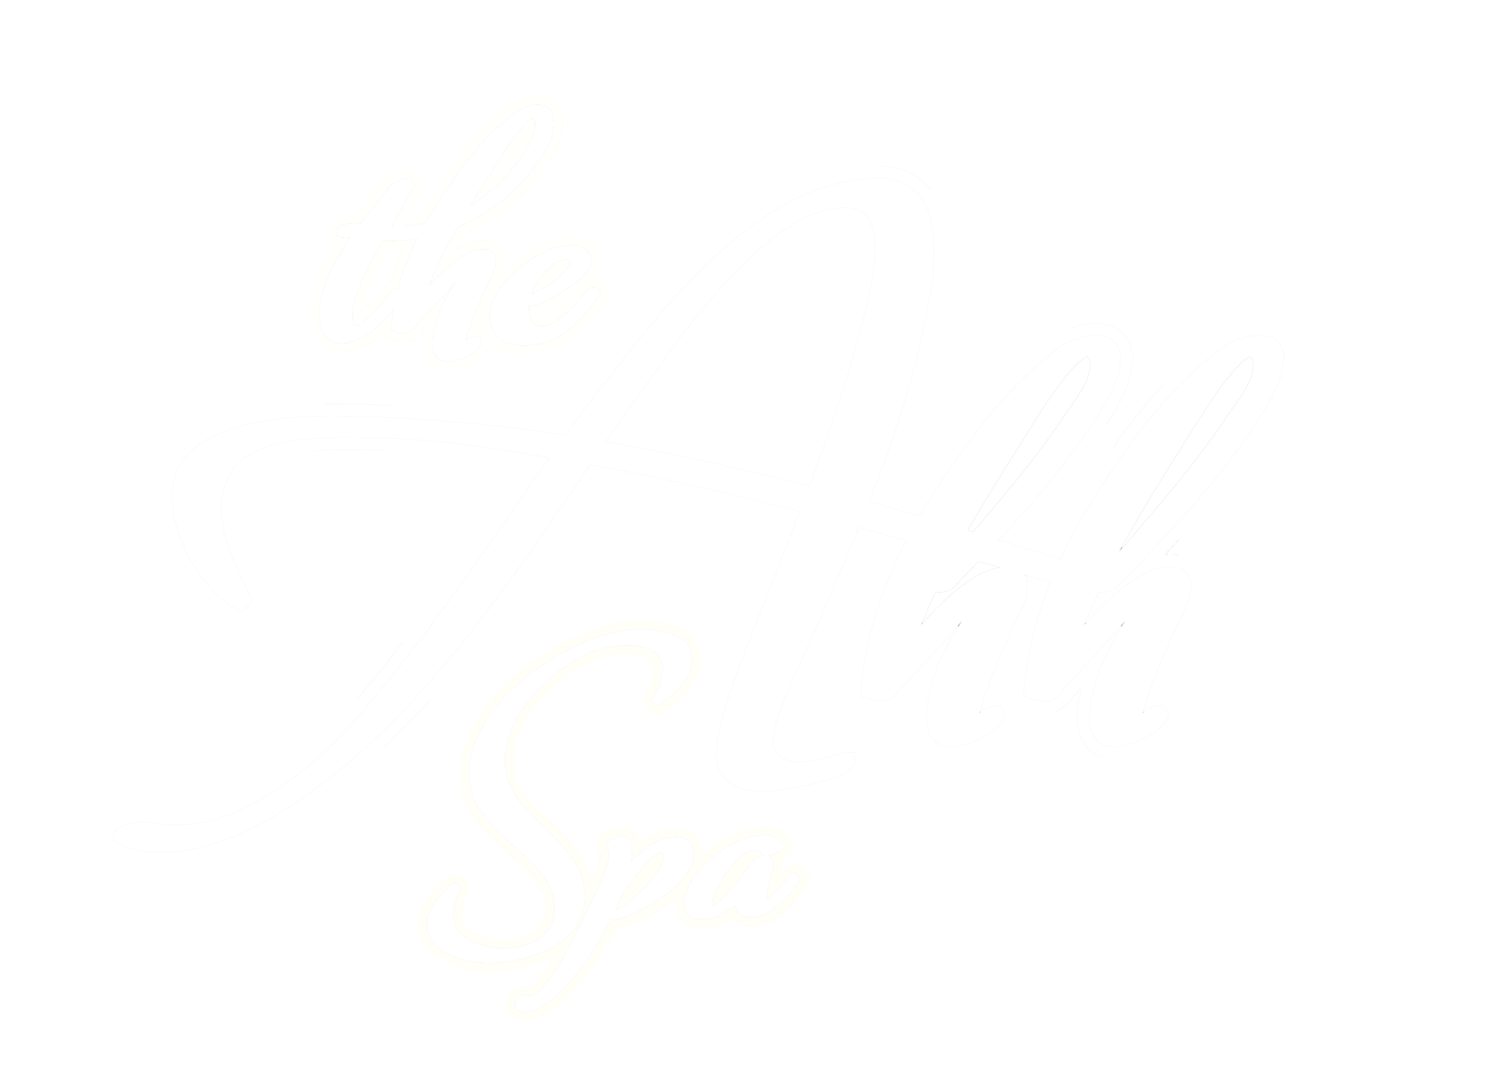 The Ahh Spa